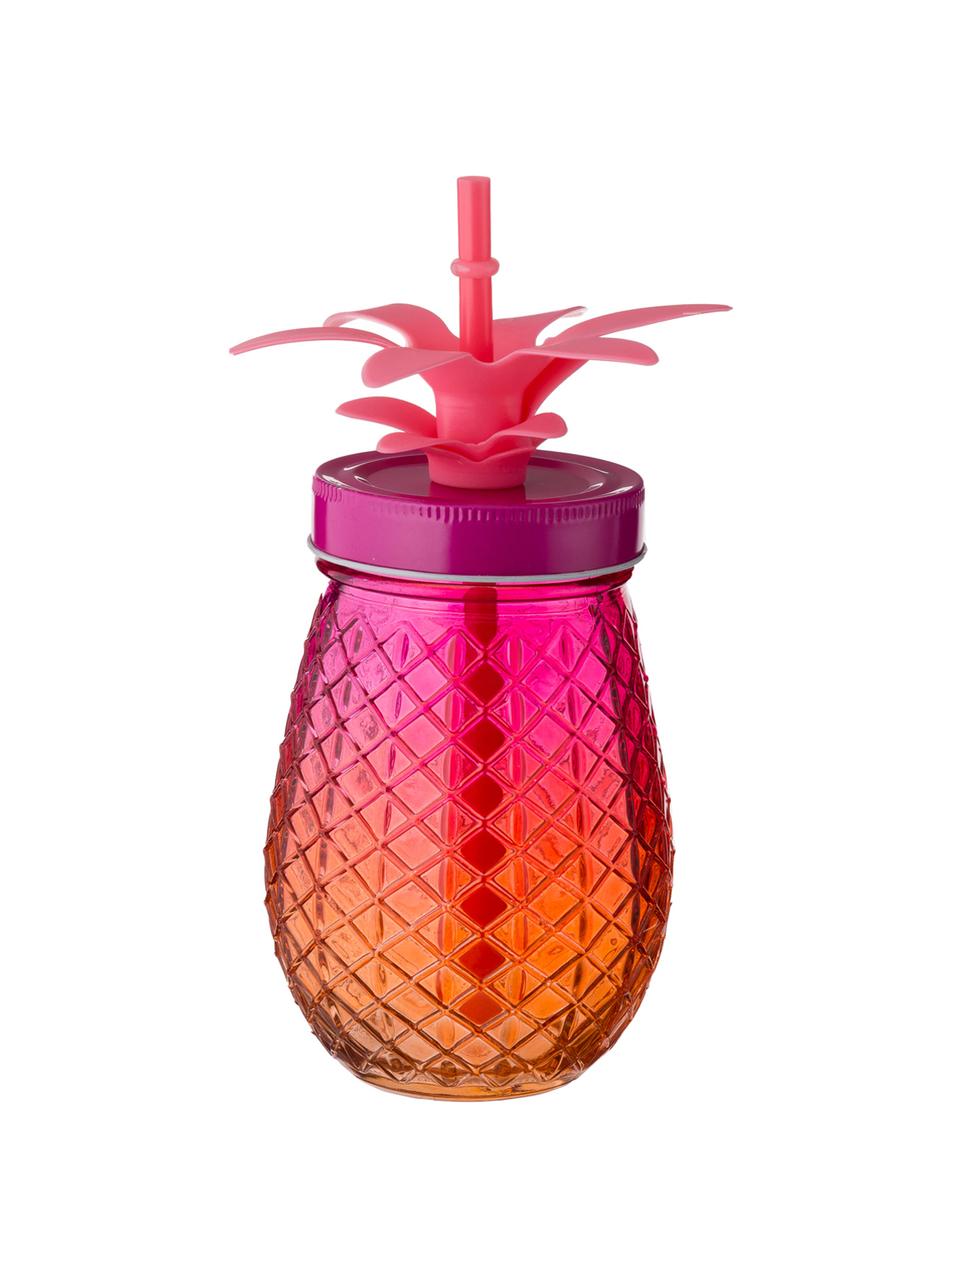 Drinkglazen Pineapples met deksel en rietje, 3-delig, Drinkglas: glas, Deksel: metaal, Rietje: kunststof, Roze, oranje, geel, Ø 9 x H 14 cm